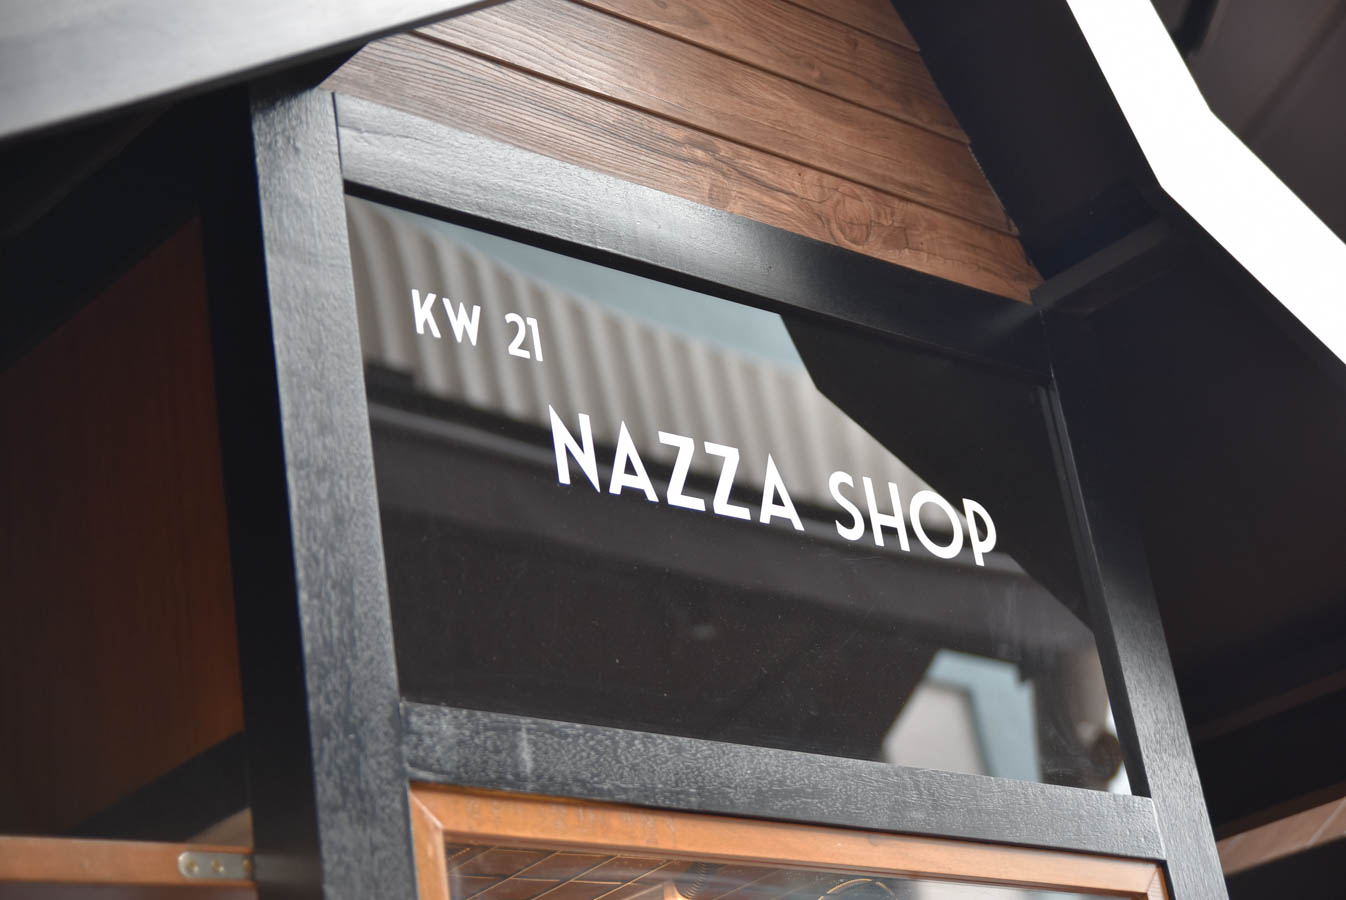 Nazza Shop